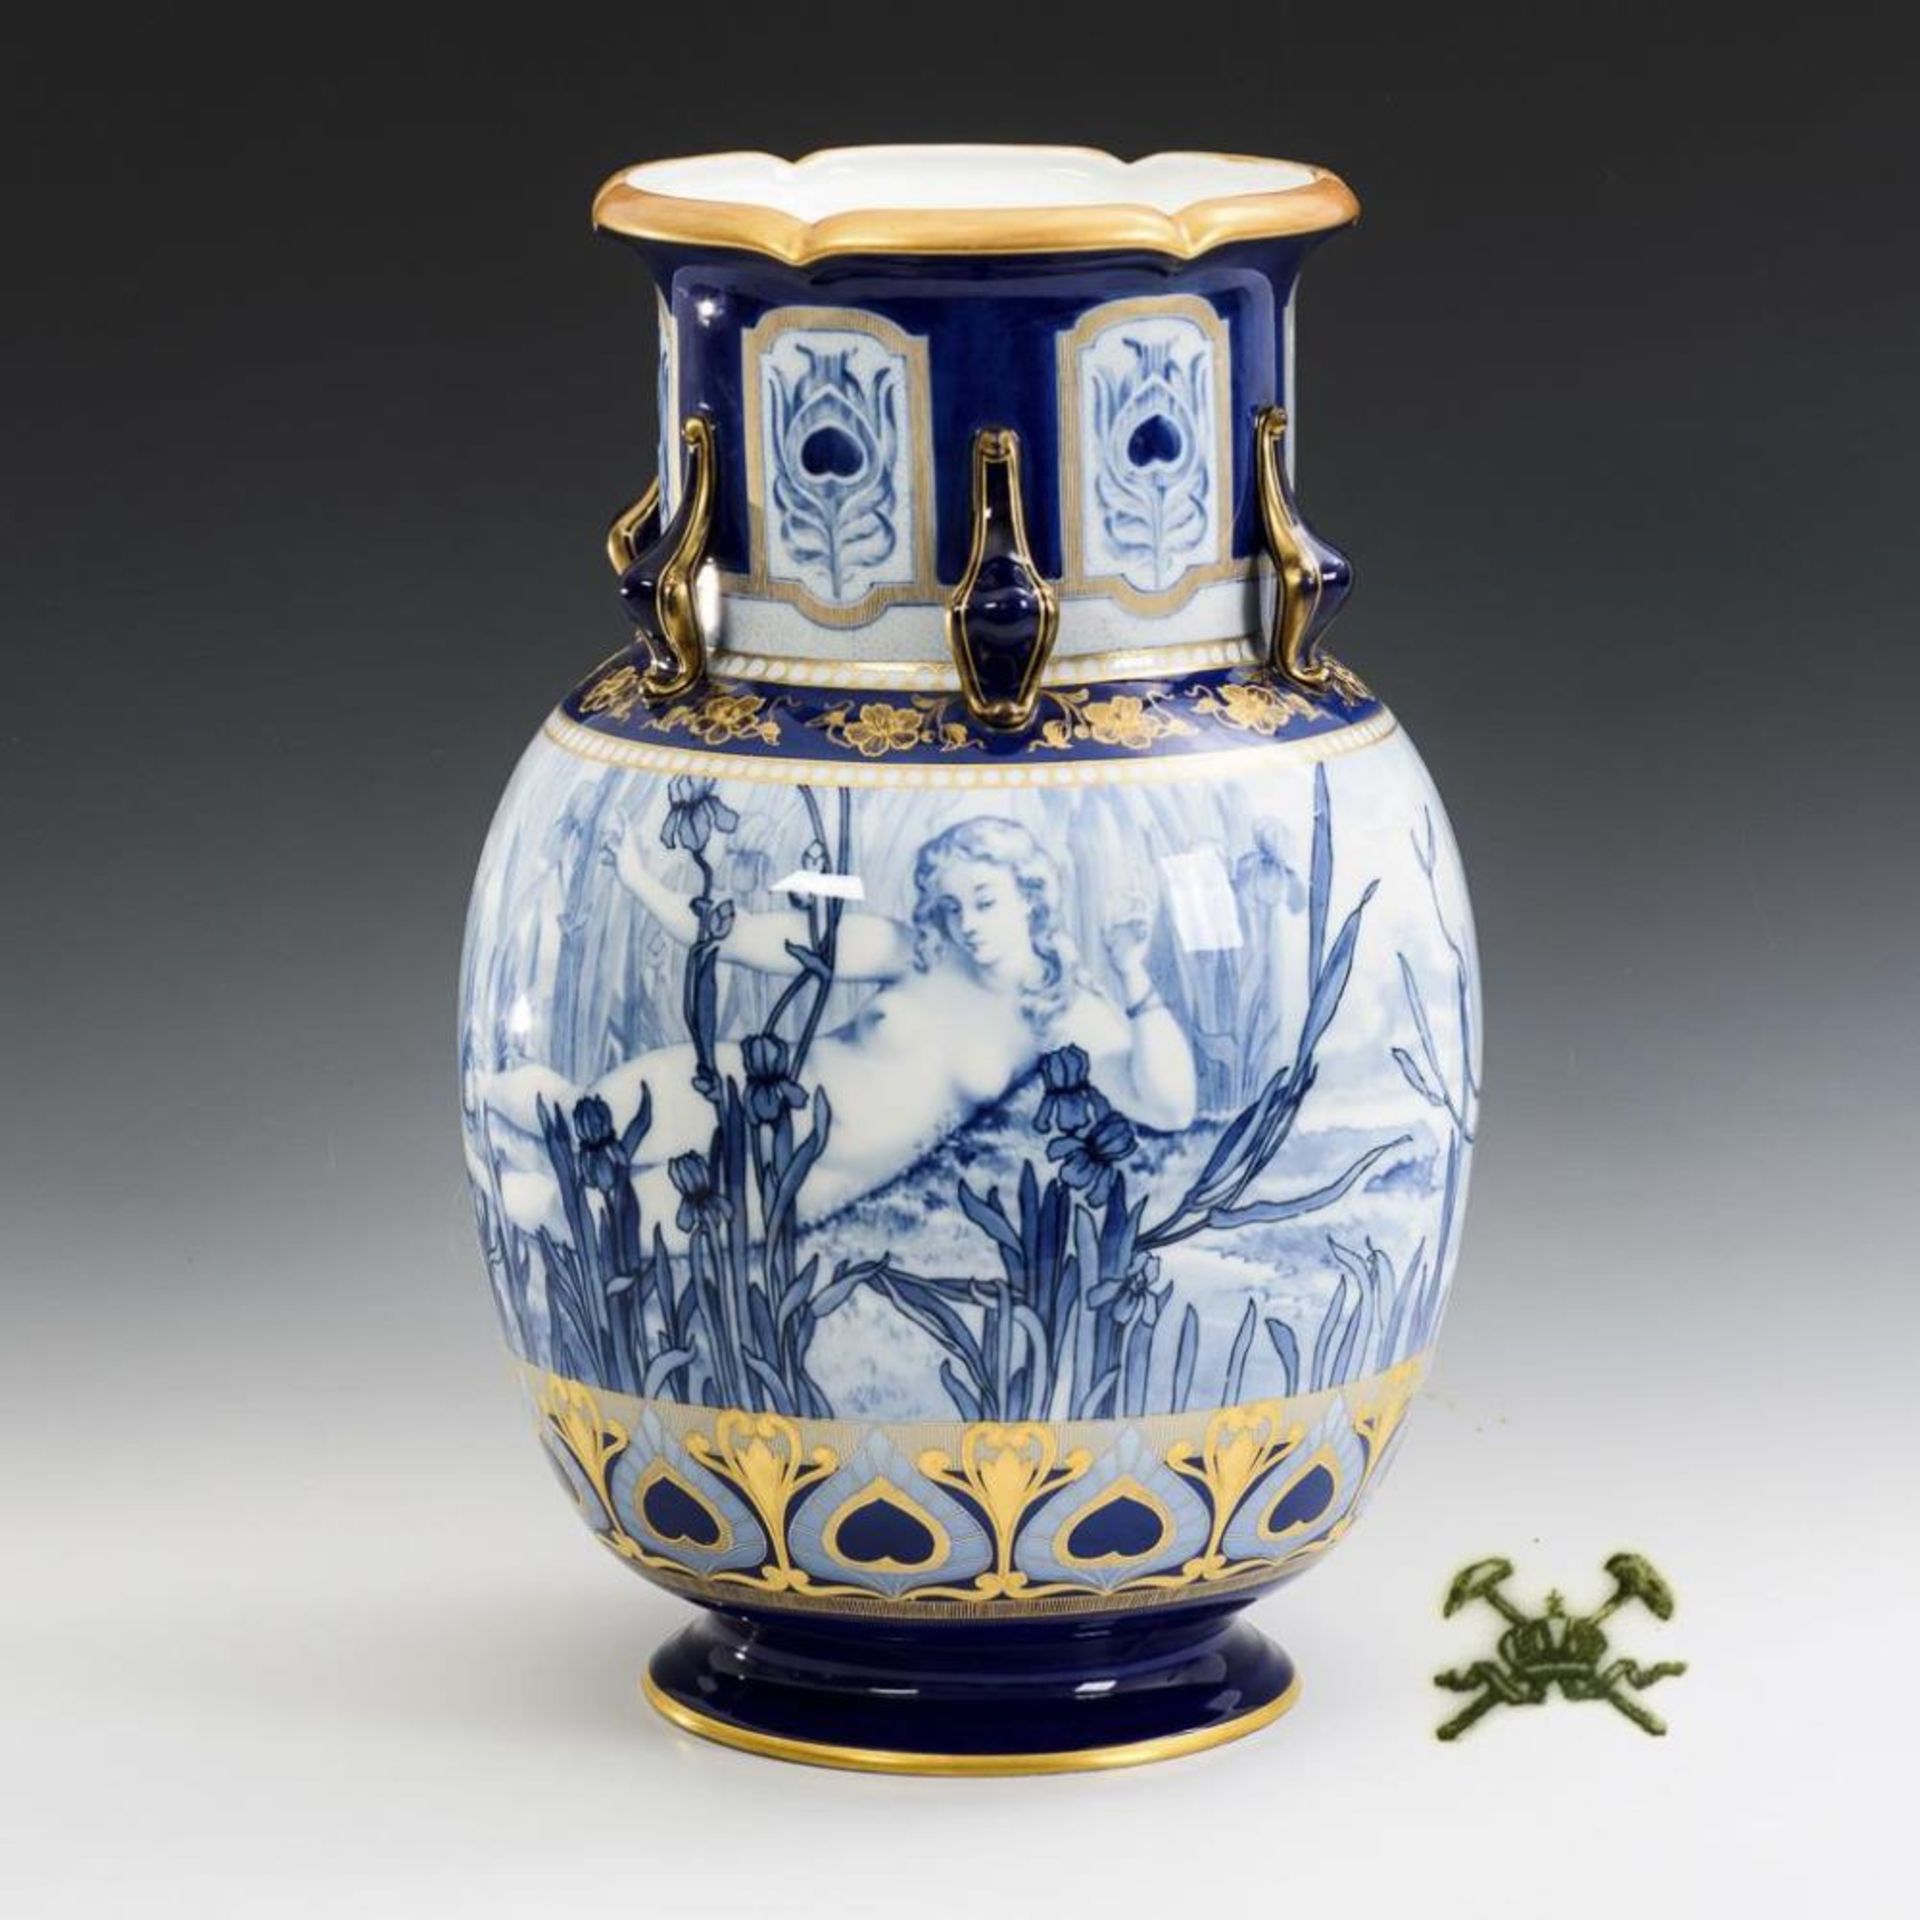 Seltene Jugendstil-Vase mit Blaumalerei. Pirkenhammer.